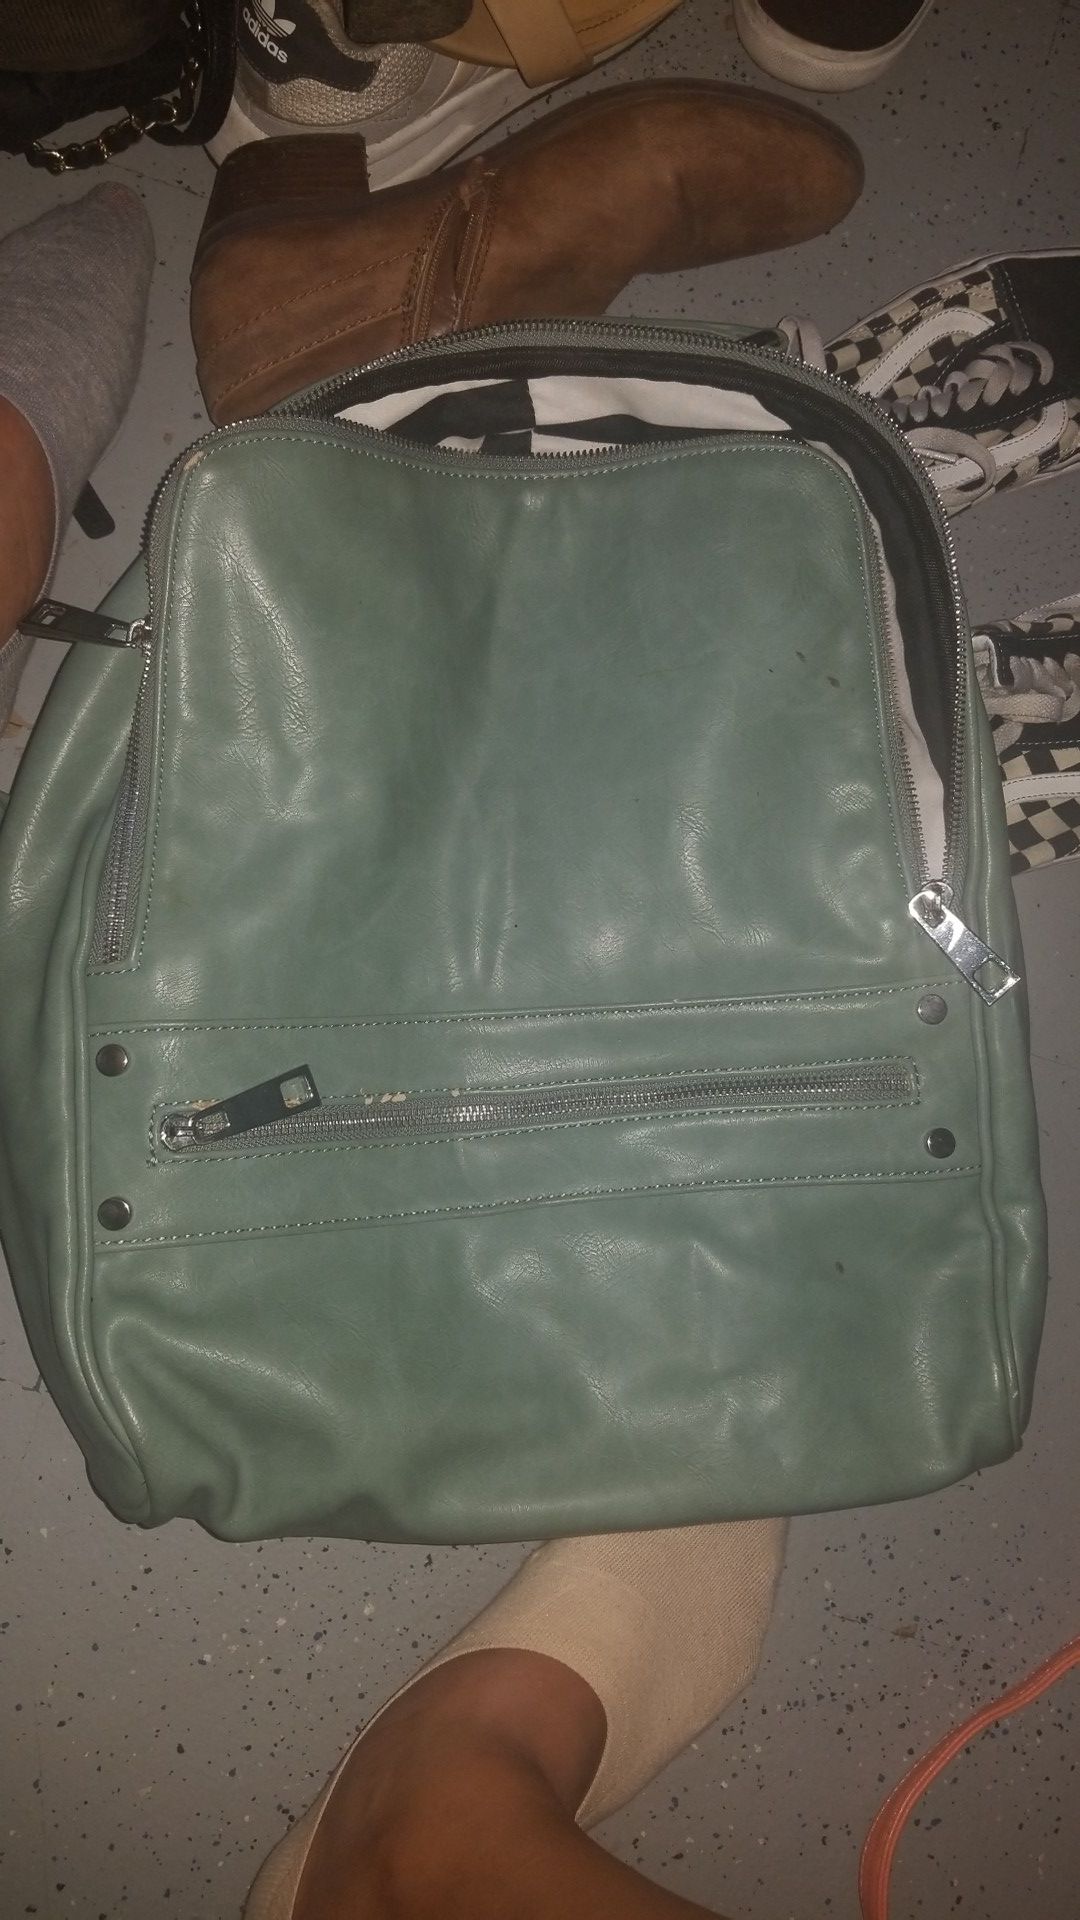 Moda luxe backpack